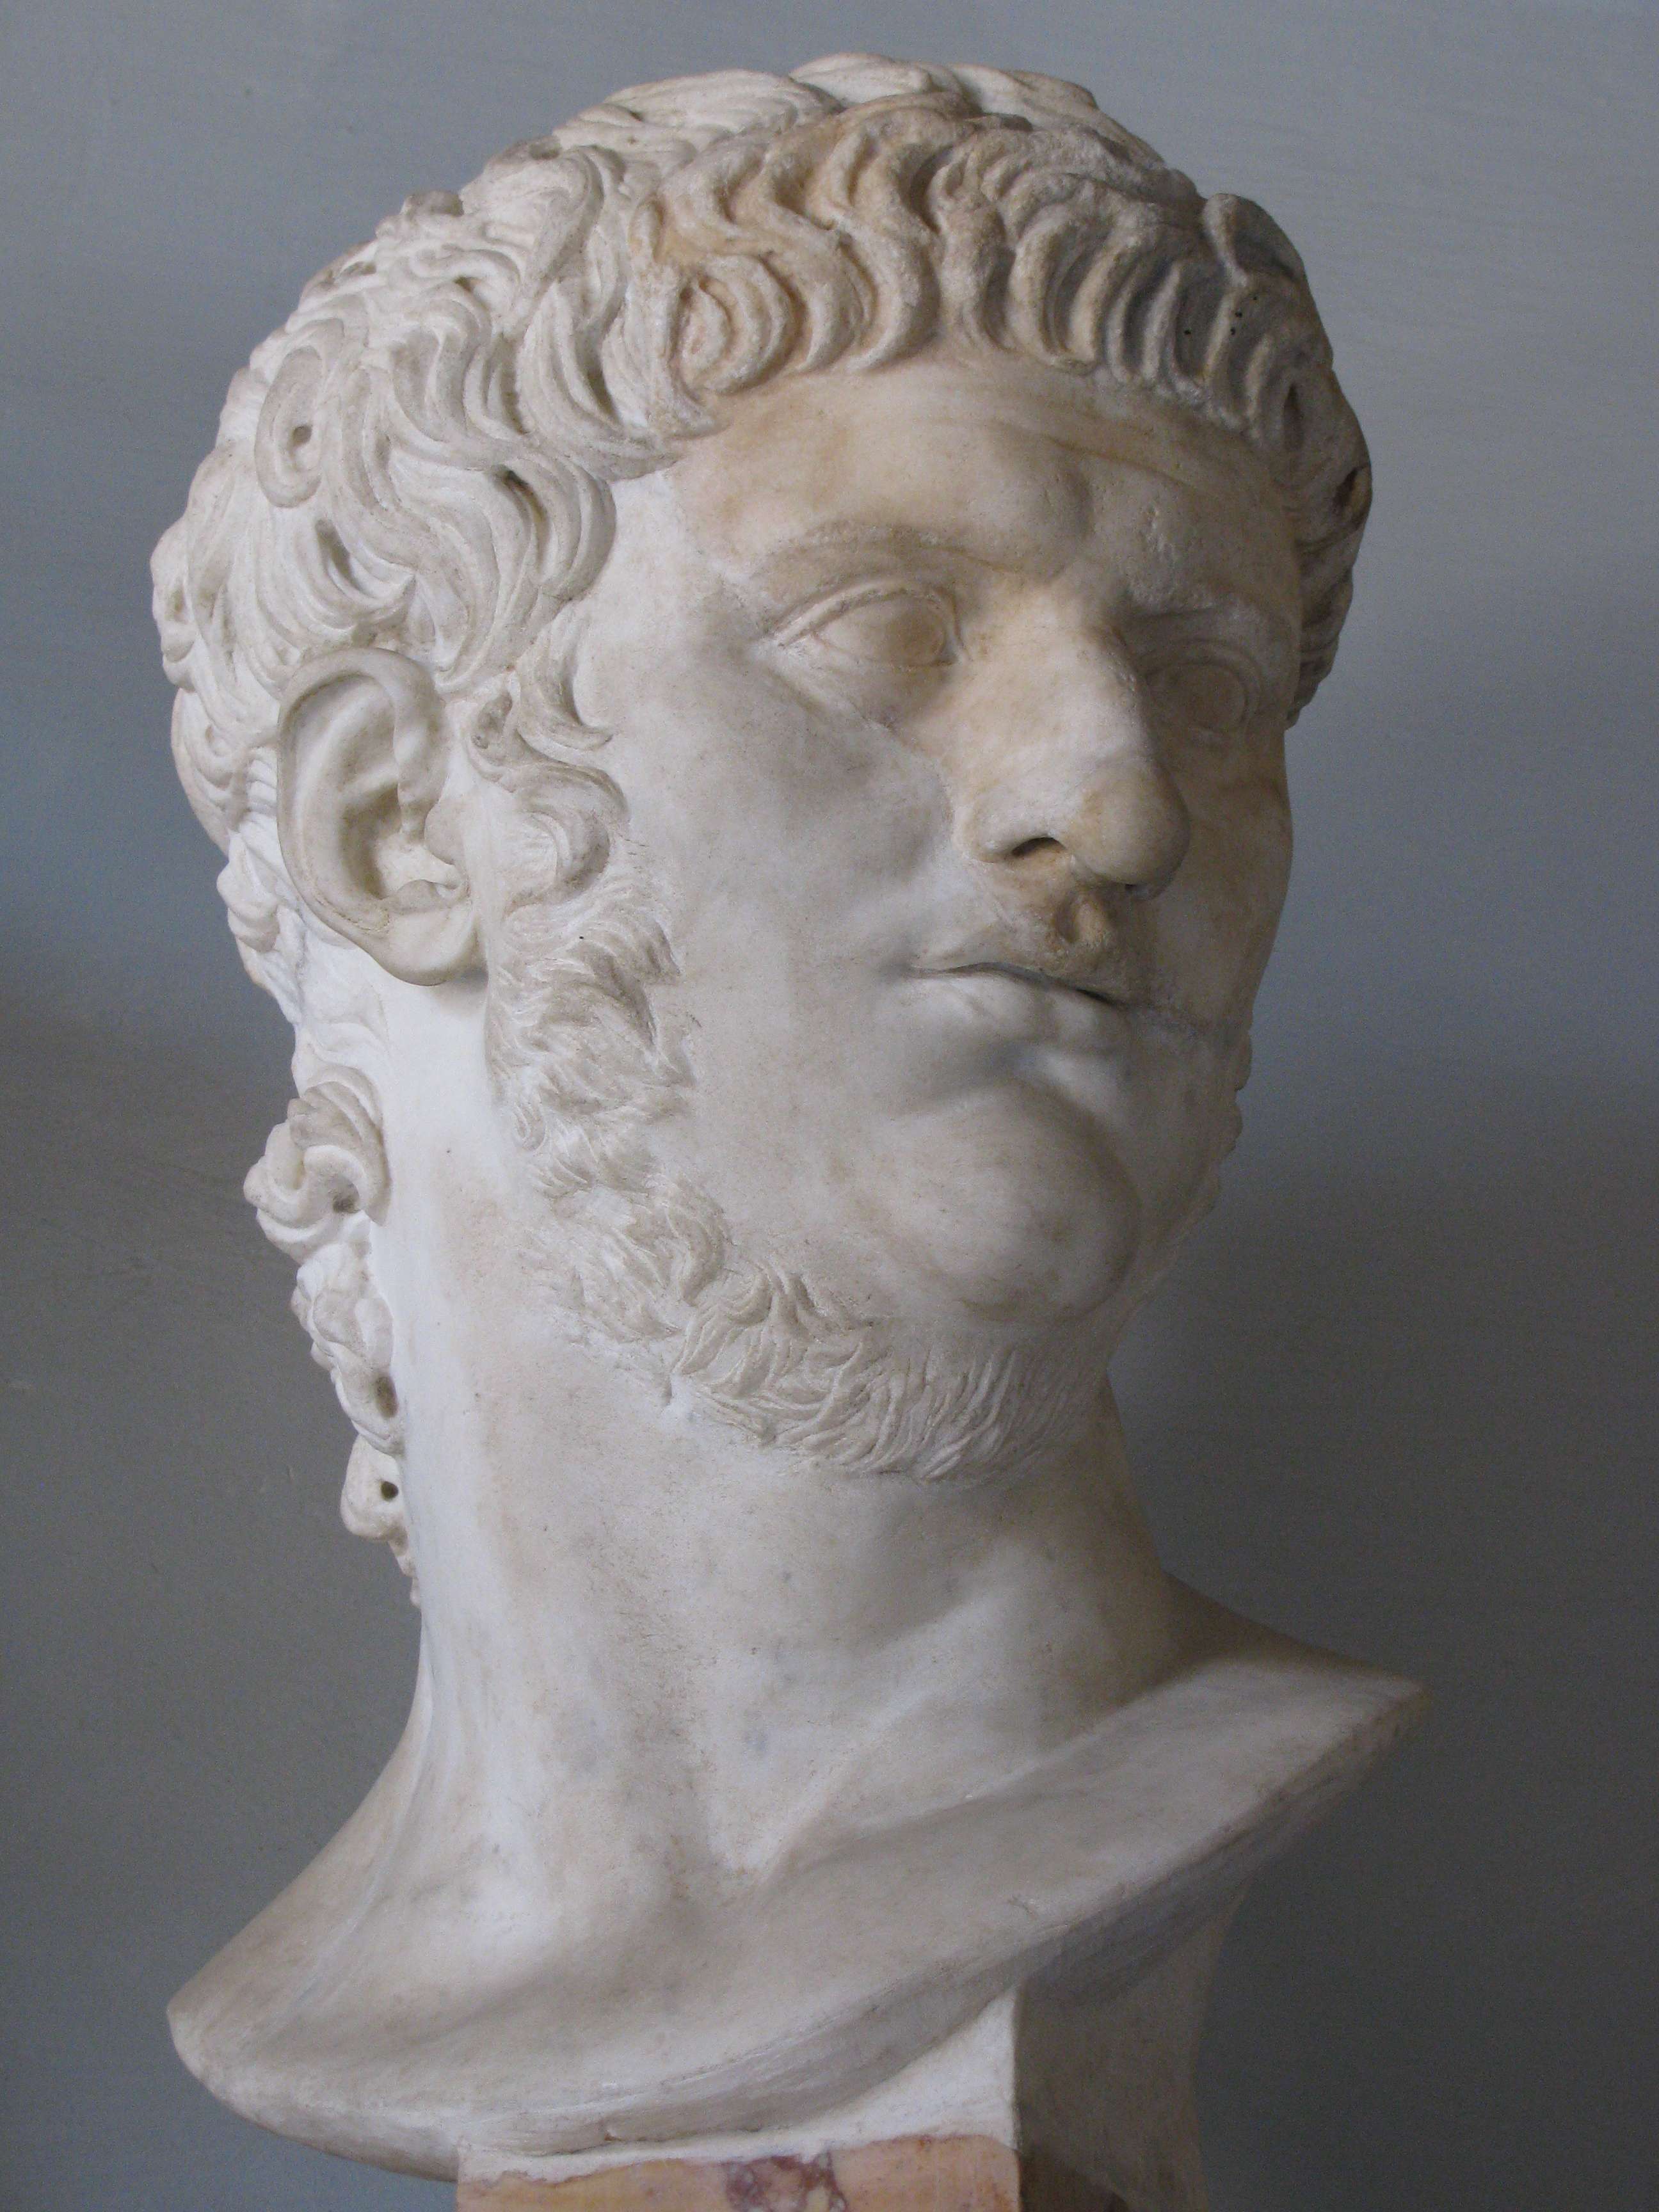 Ο Νέρων (Nero Claudius Caesar Augustus Germanicus ή Lucius Domitius Ahenobarbus, 15 Δεκεμβρίου 37 - 9 Ιουνίου 68) ήταν Ρωμαίος Αυτοκράτορας από το 54 έως το 68 και ο τελευταίος της Ιουλιο-Κλαυδιανής Δυναστείας. Ο Νέρων υιοθετήθηκε από τον Κλαύδιο και έγινε κληρονόμος και διάδοχός του. Ανήλθε στο θρόνο το 54, μετά το θάνατο του Κλαύδιου.